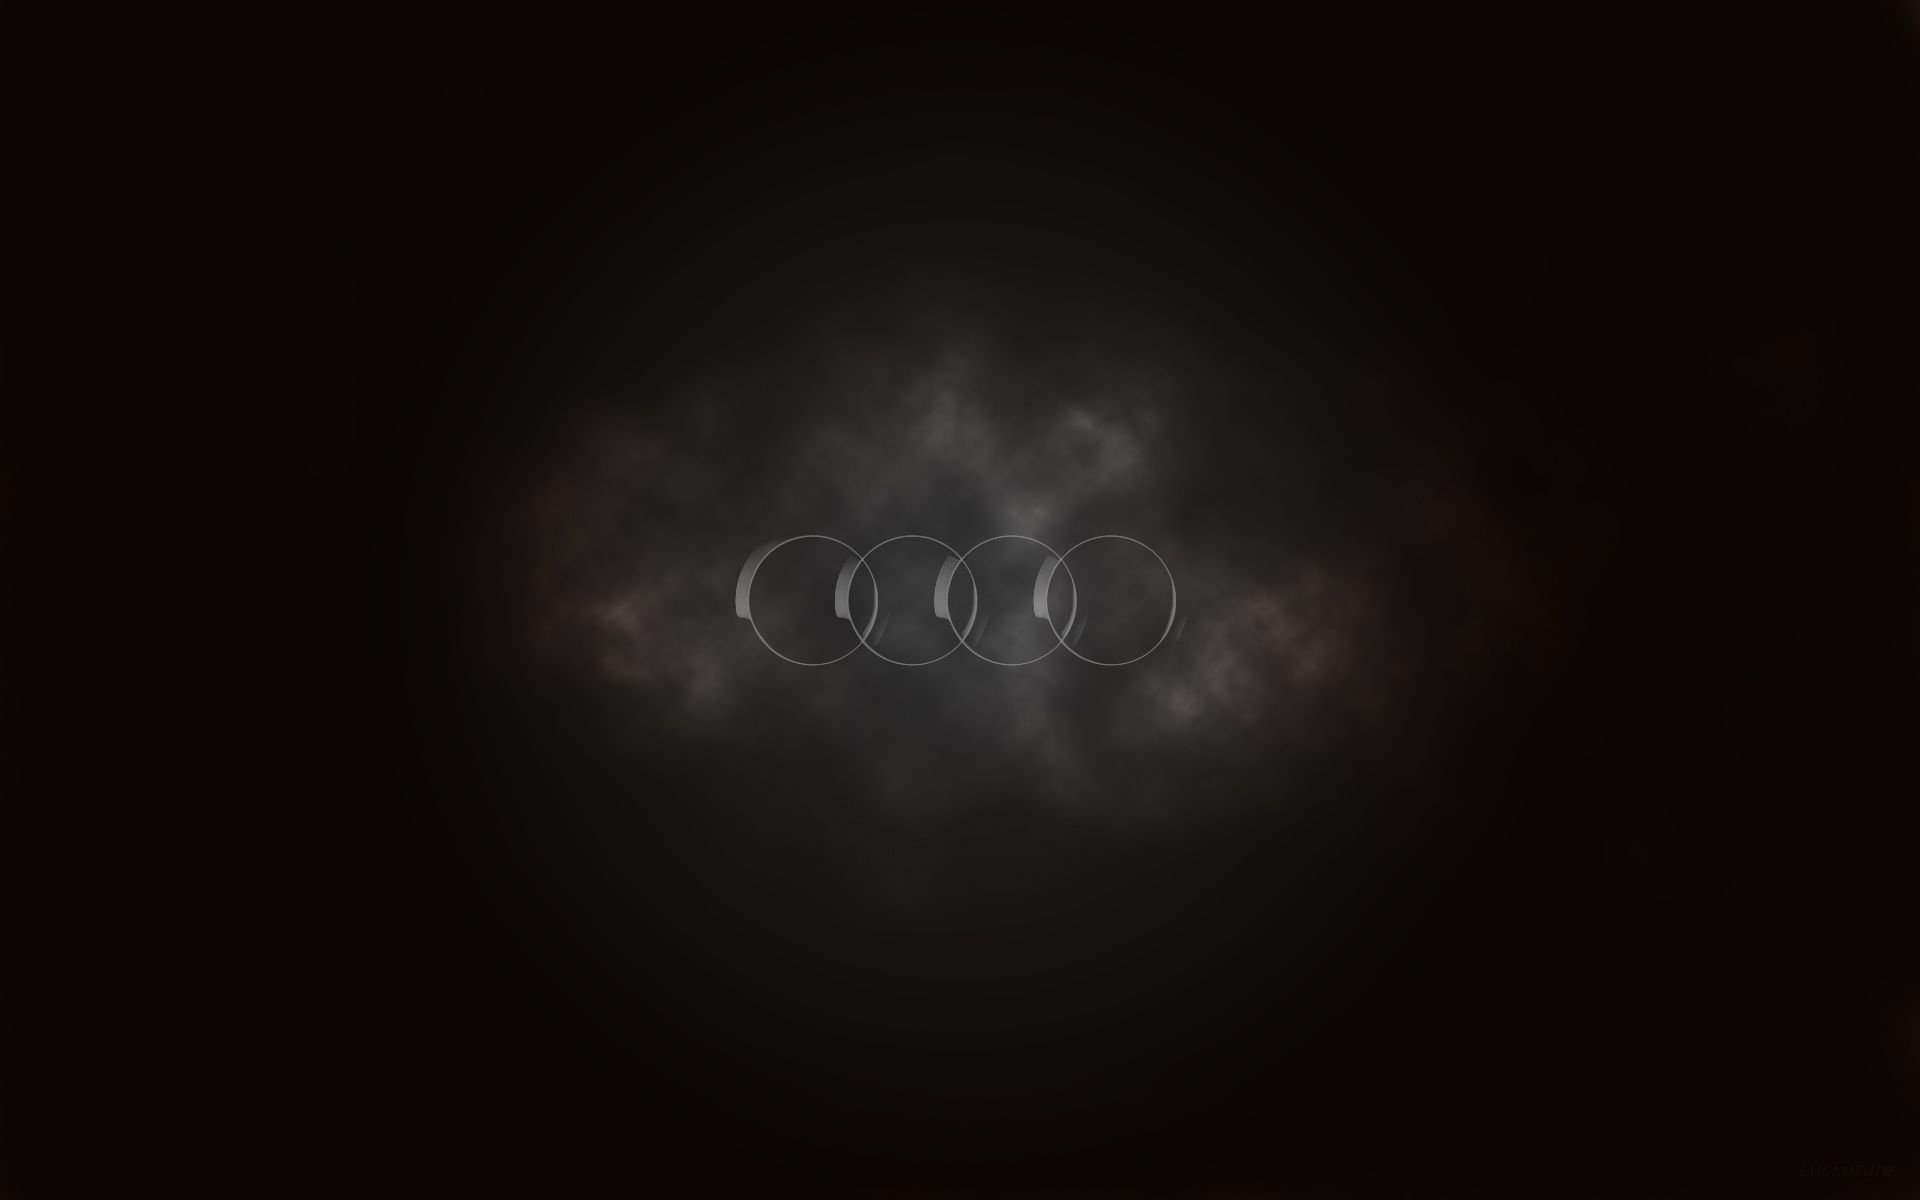 Audi Logo HD Wallpaper